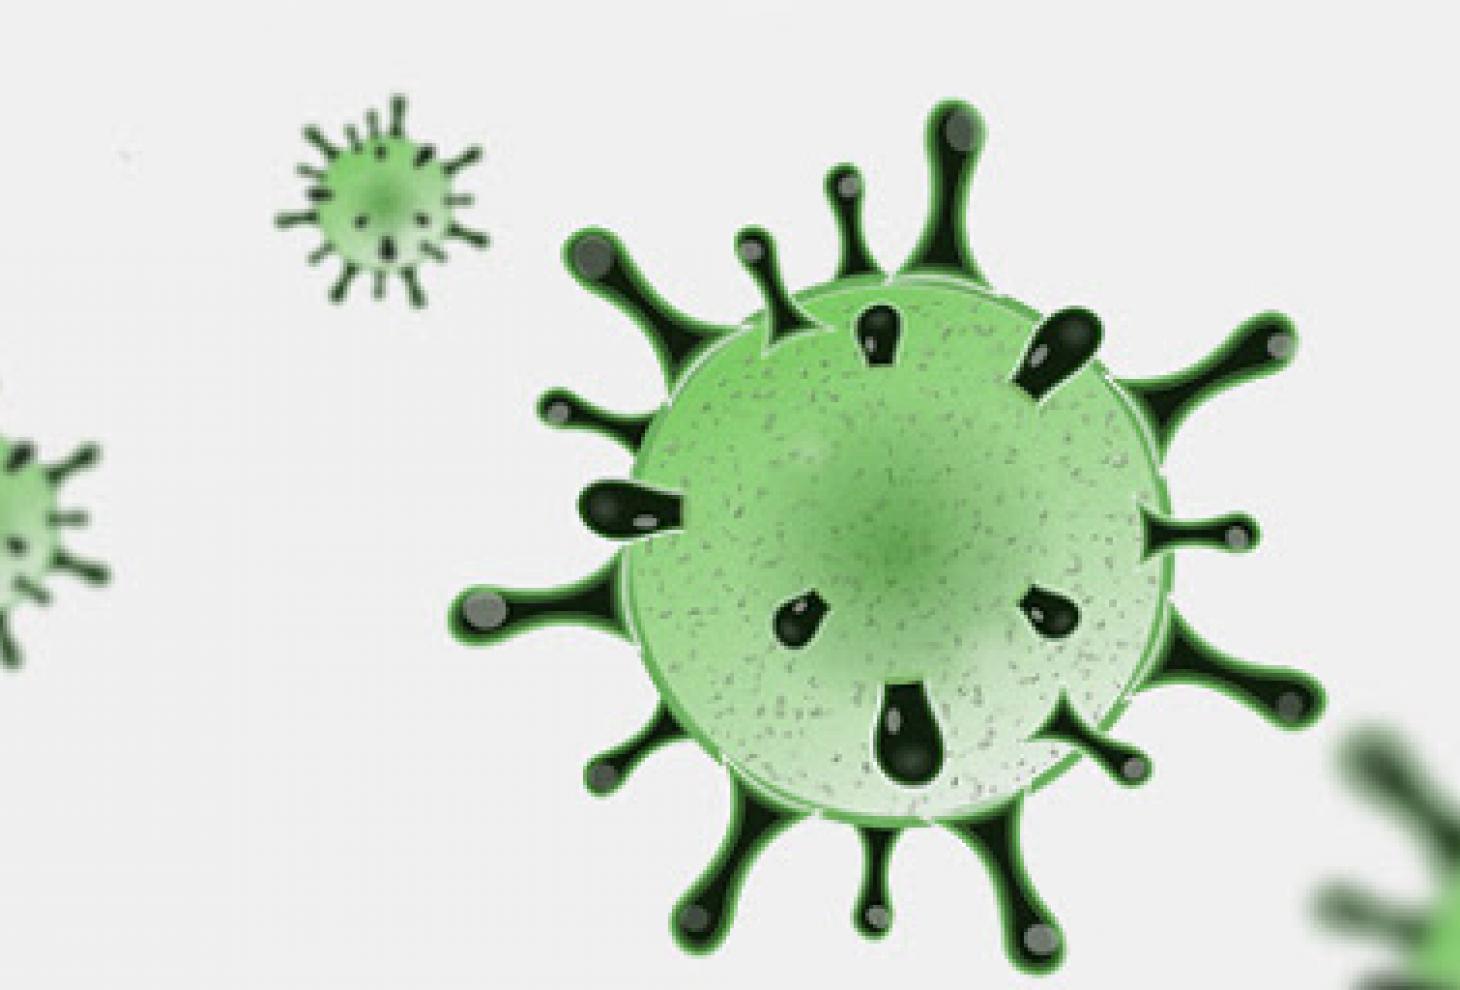 Coronavirus, 7 nuovi casi positivi in Abruzzo su 1260 tamponi analizzati.Dati aggiornati al 18 maggio 2020